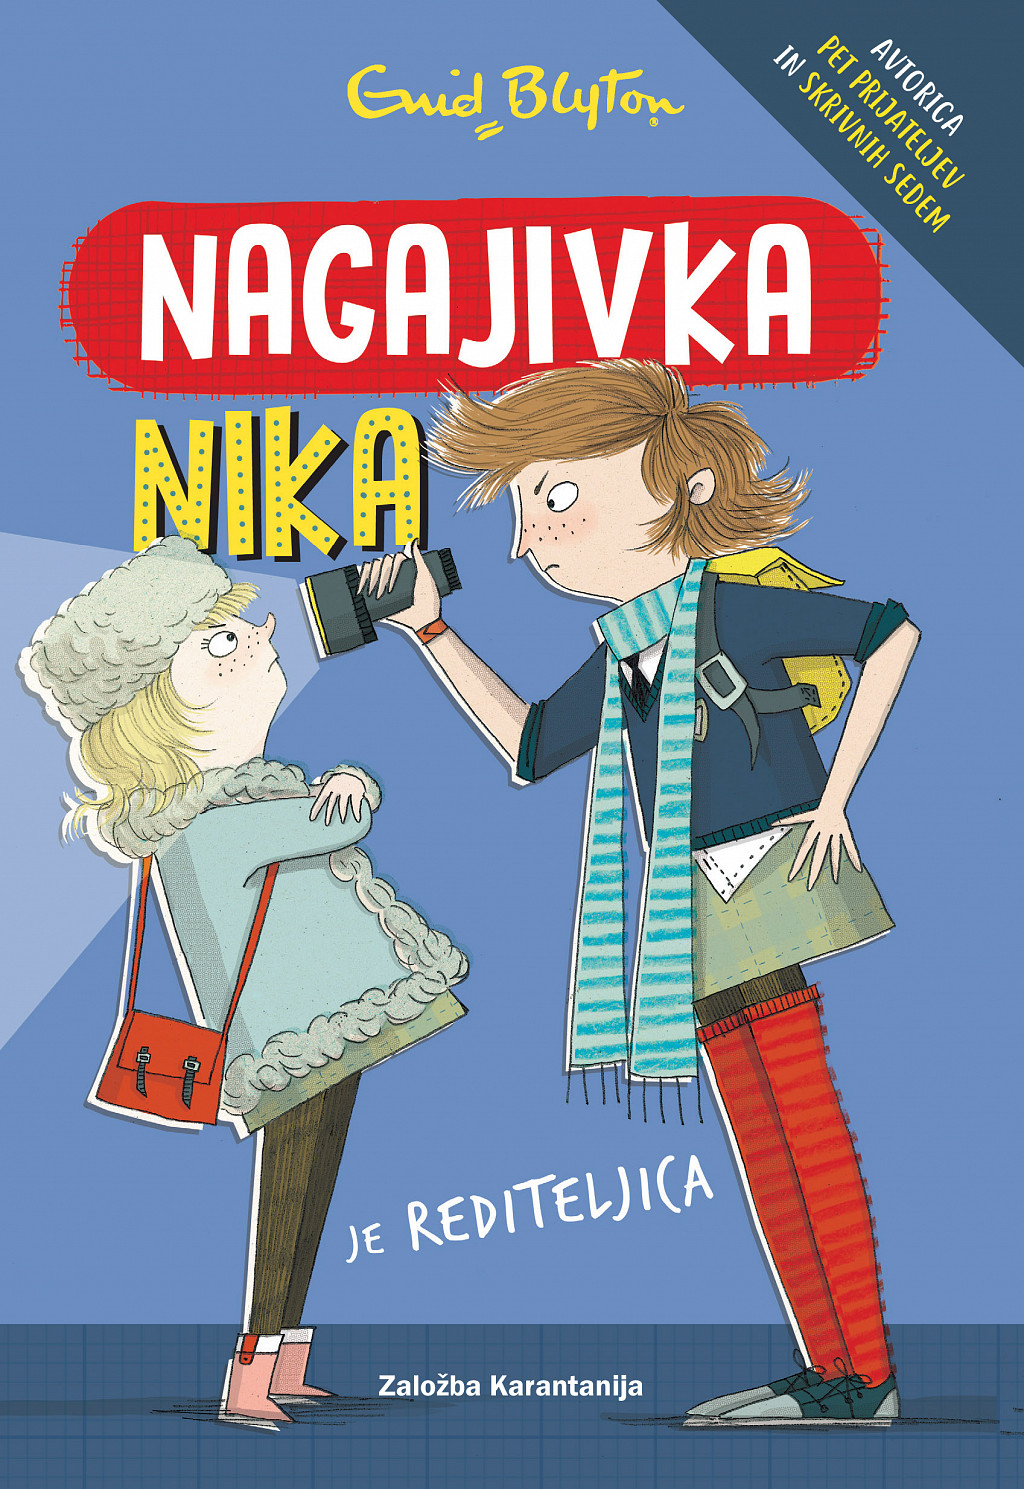 Nagajivka Nika je rediteljica